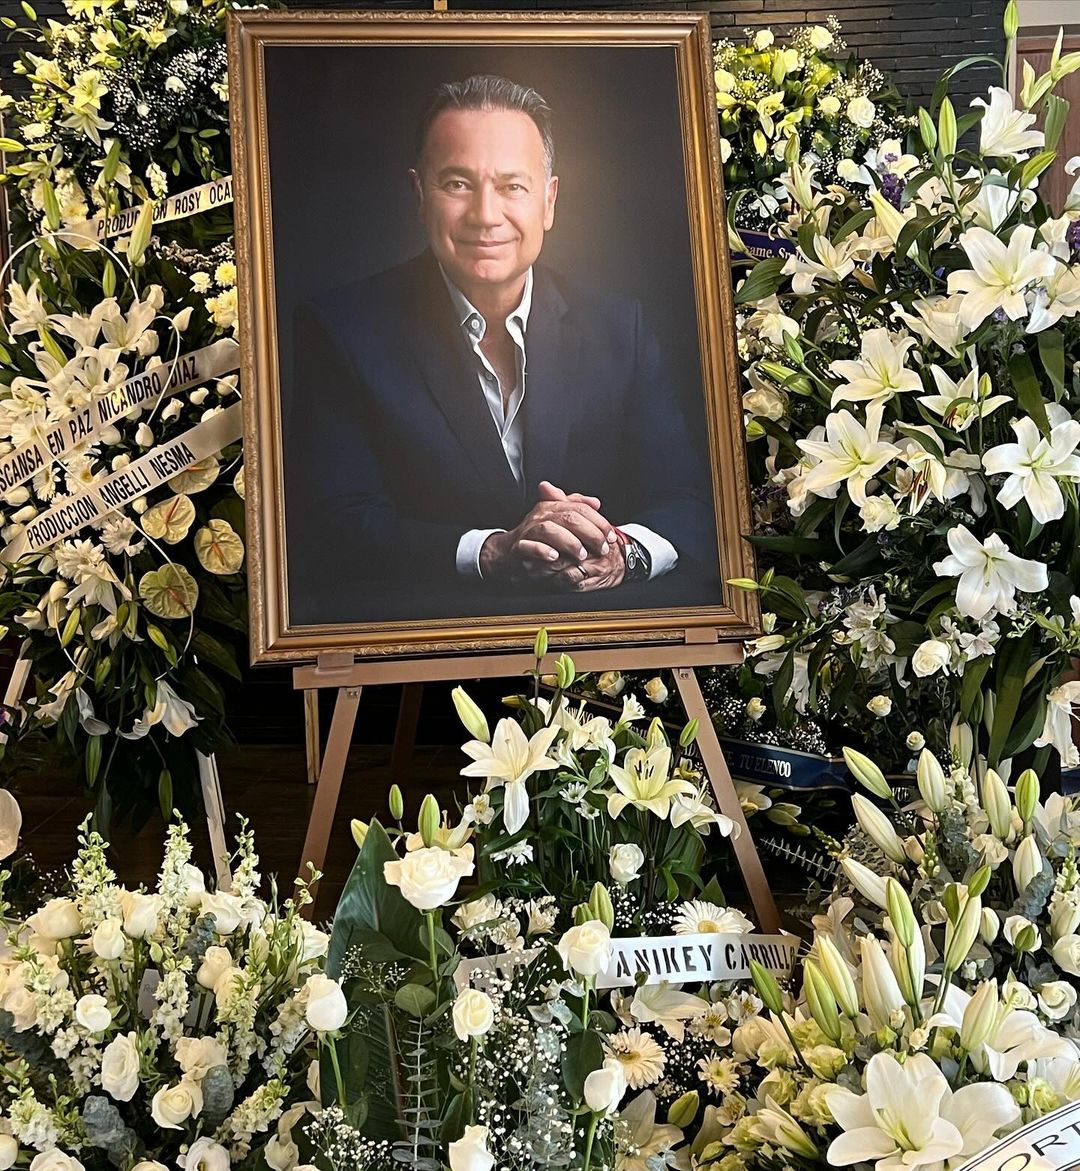 Nicandro Díaz. Tunden a famosos por tomarse fotos en funeral